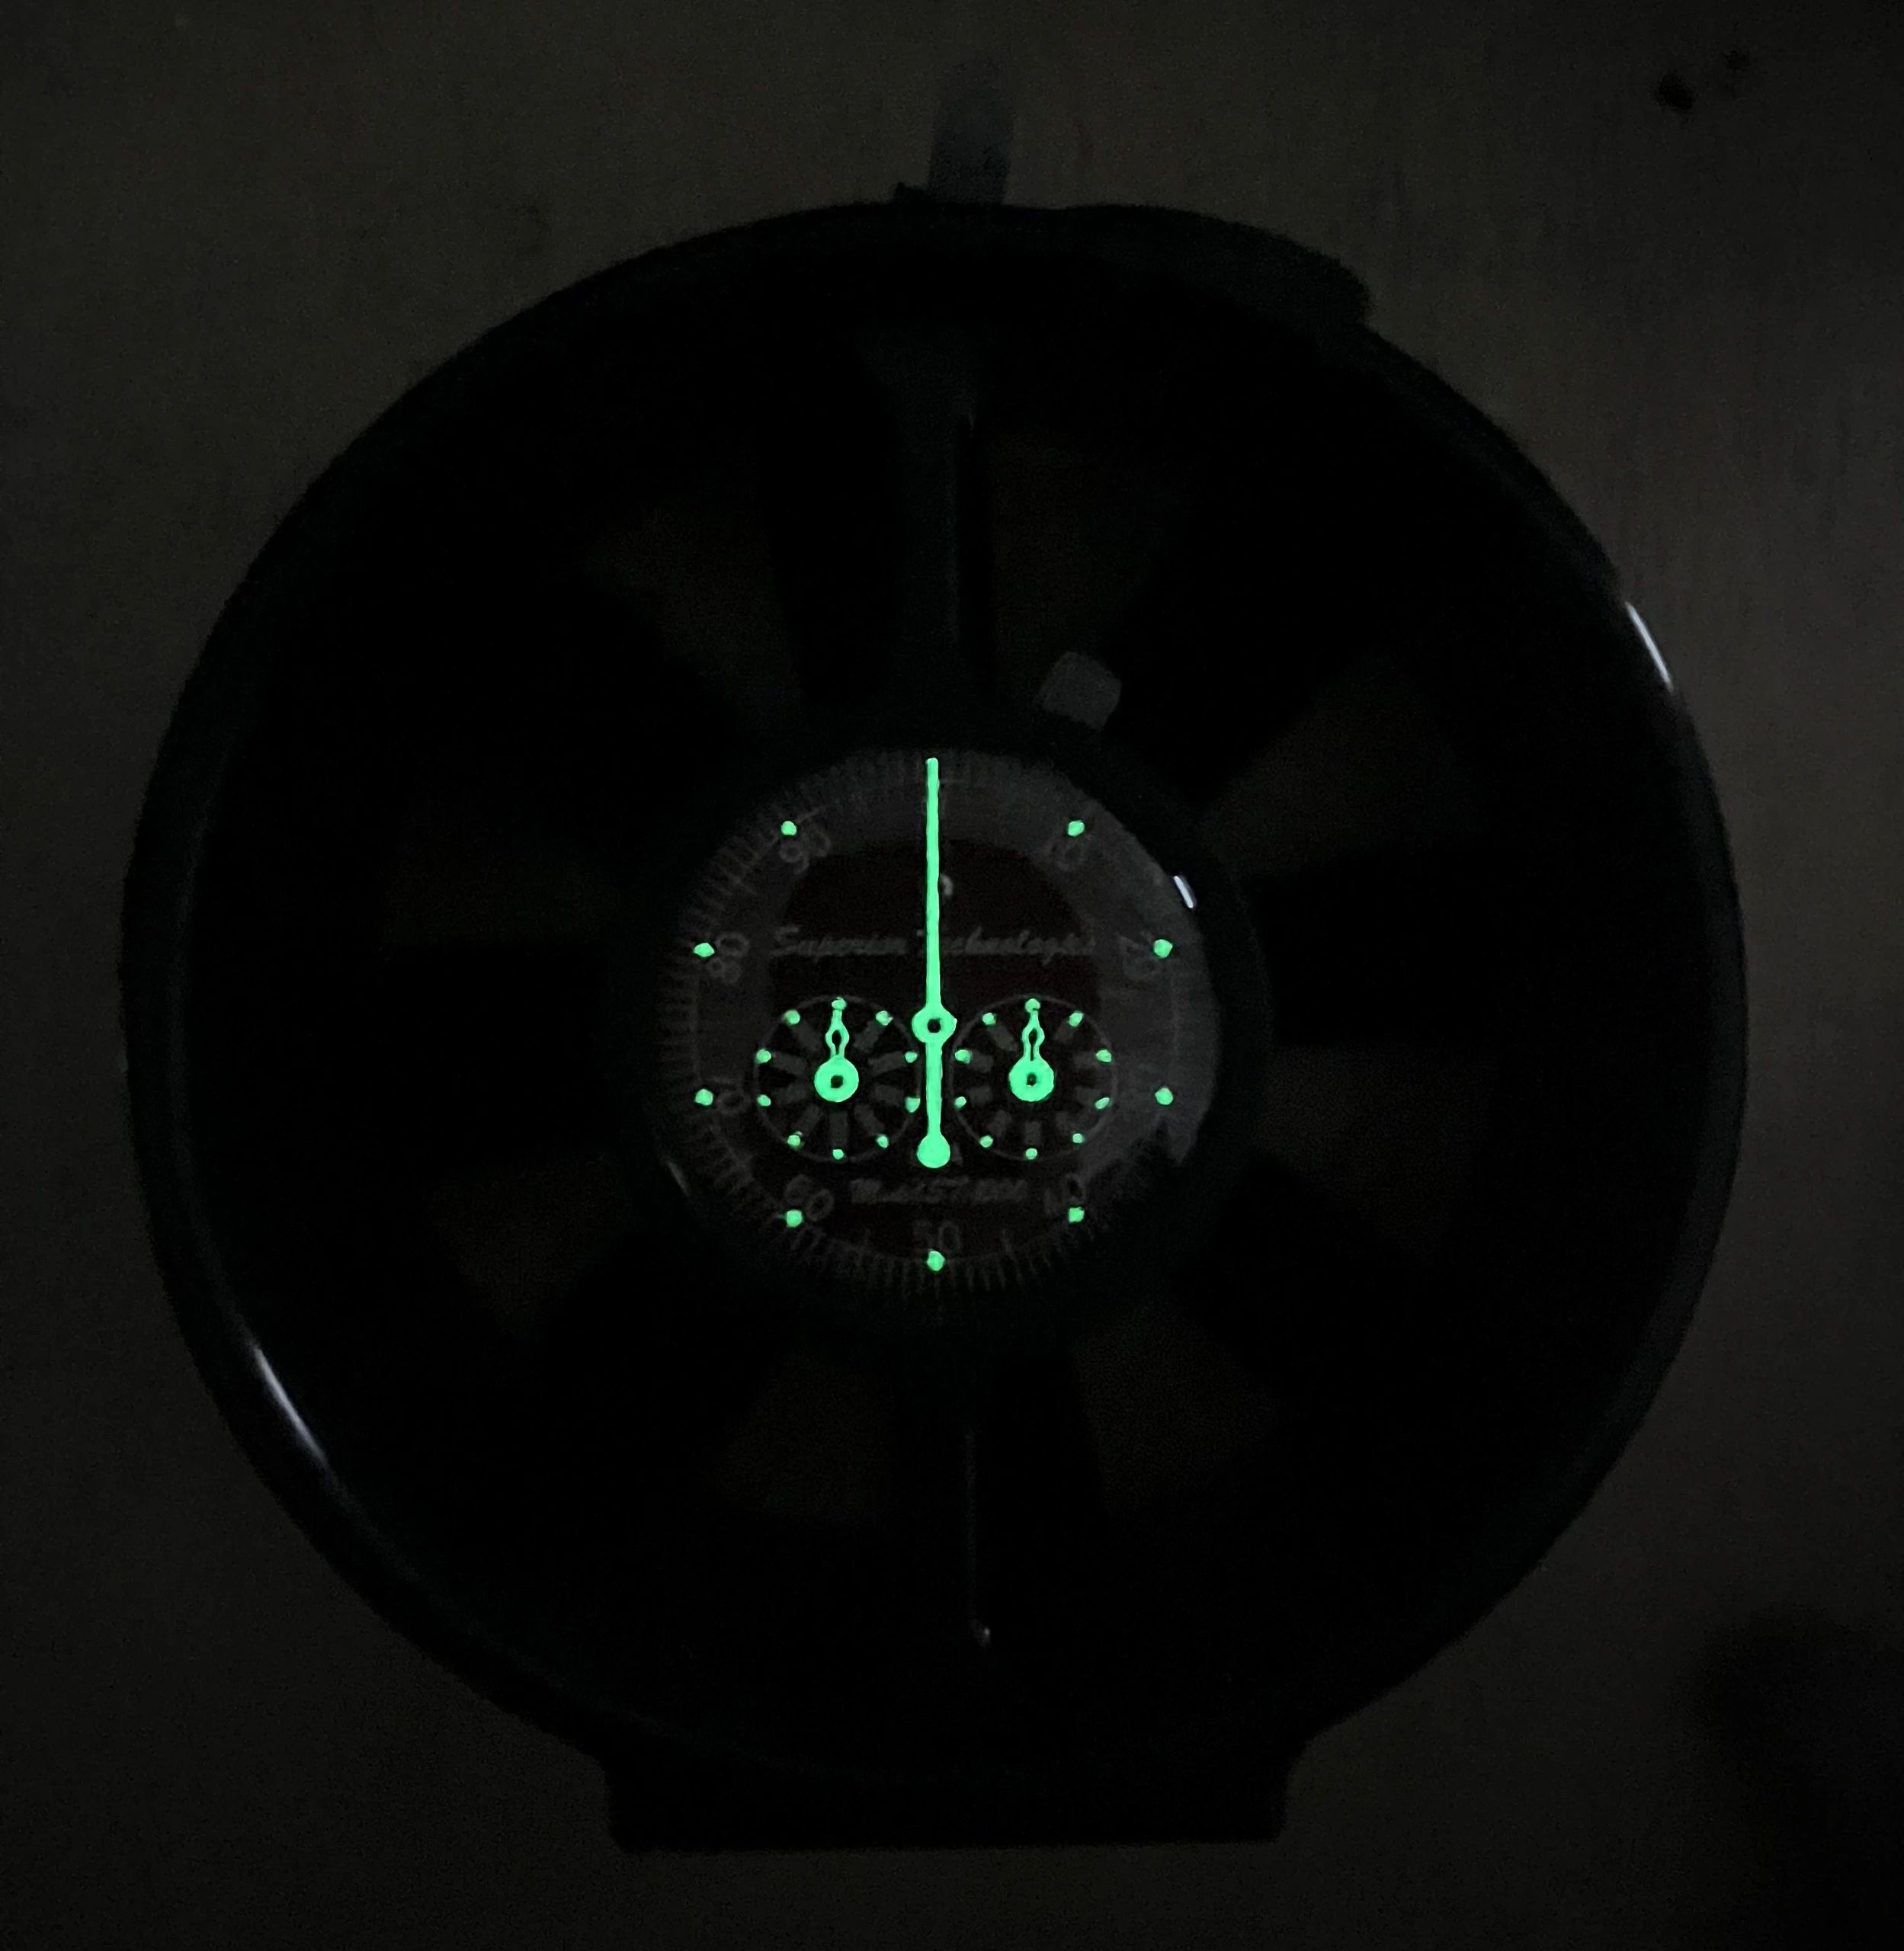 Glow in Dark Vane Anemometer (Luminous Hands and Dial)